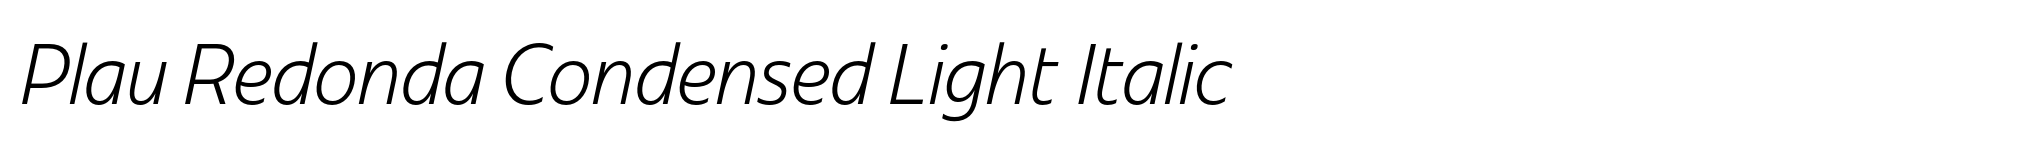 Plau Redonda Condensed Light Italic image